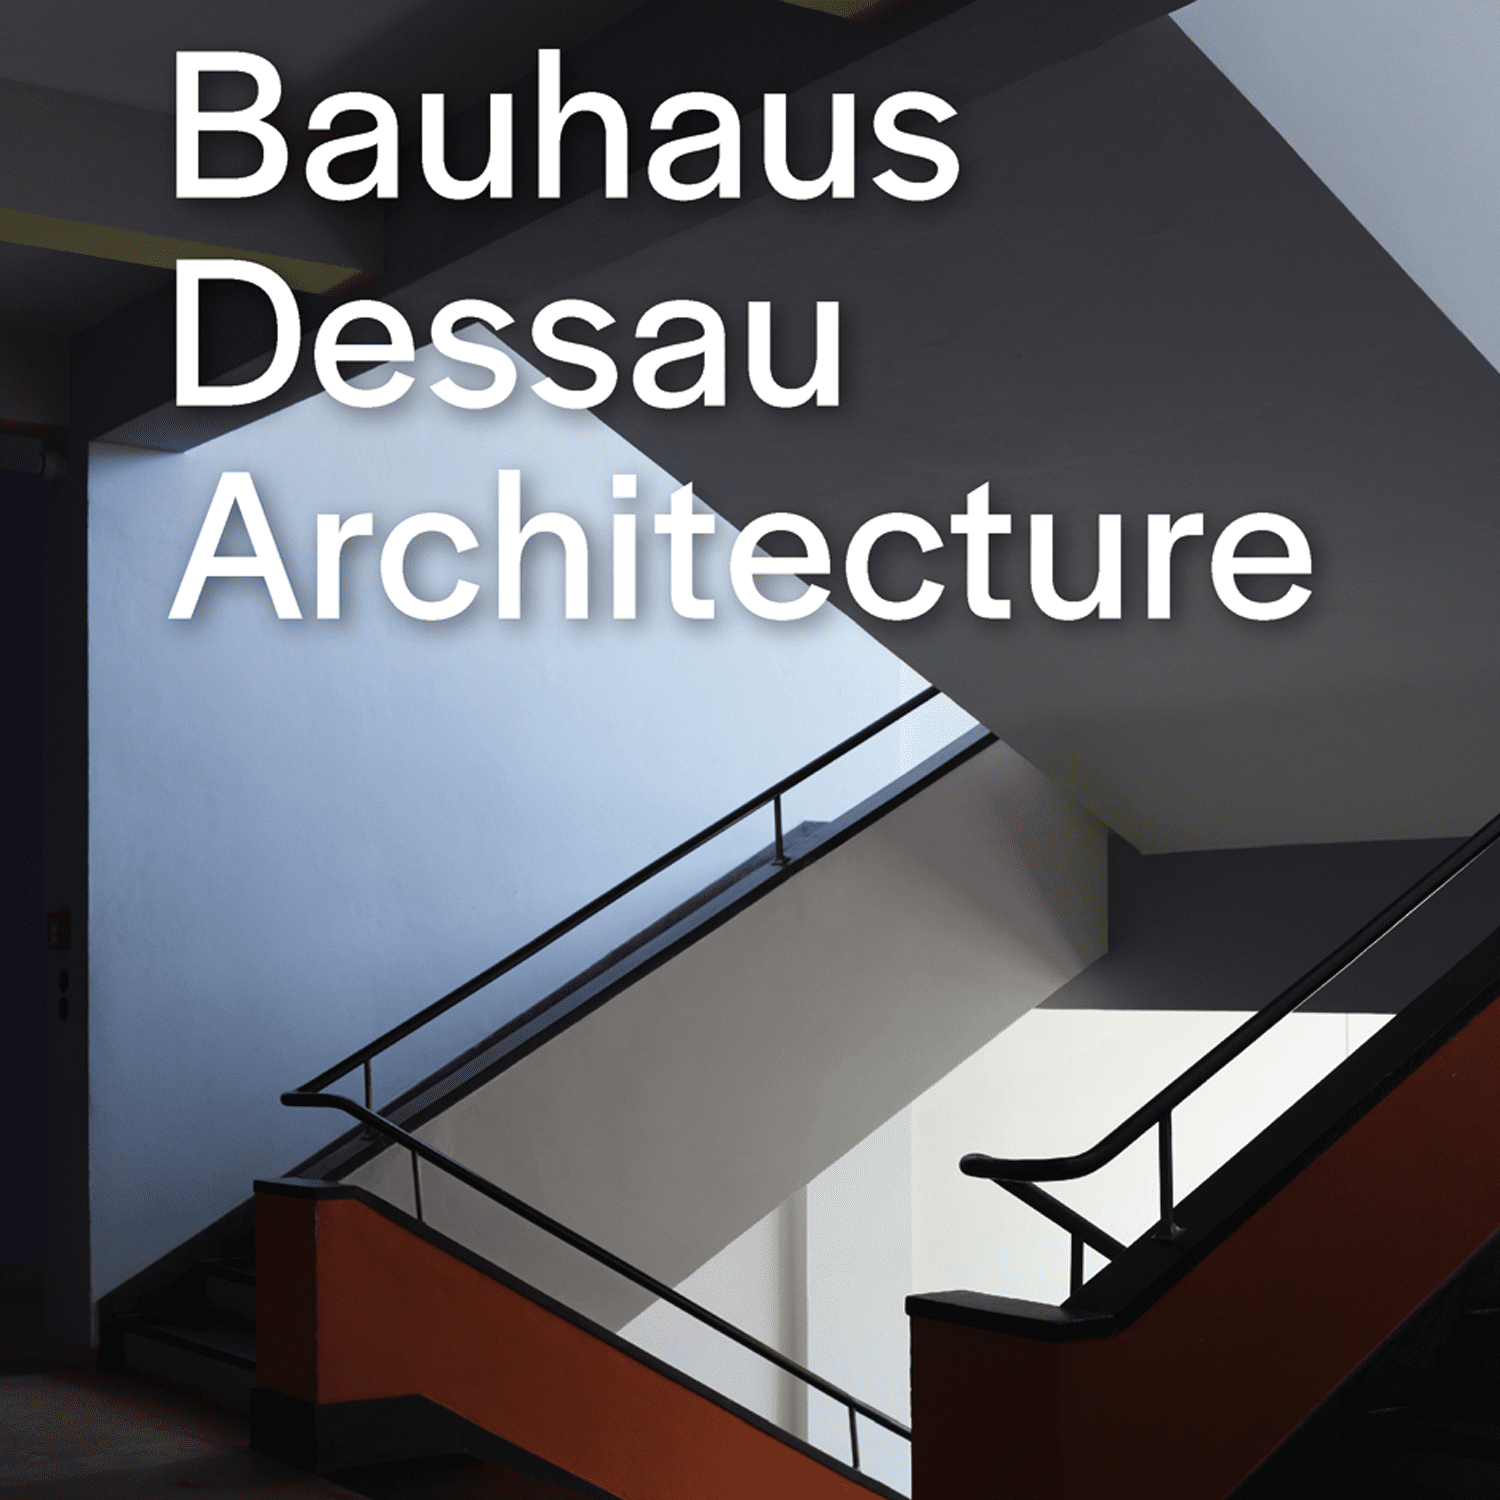 बॉहॉस डेसौ वास्तुकला की तस्वीर